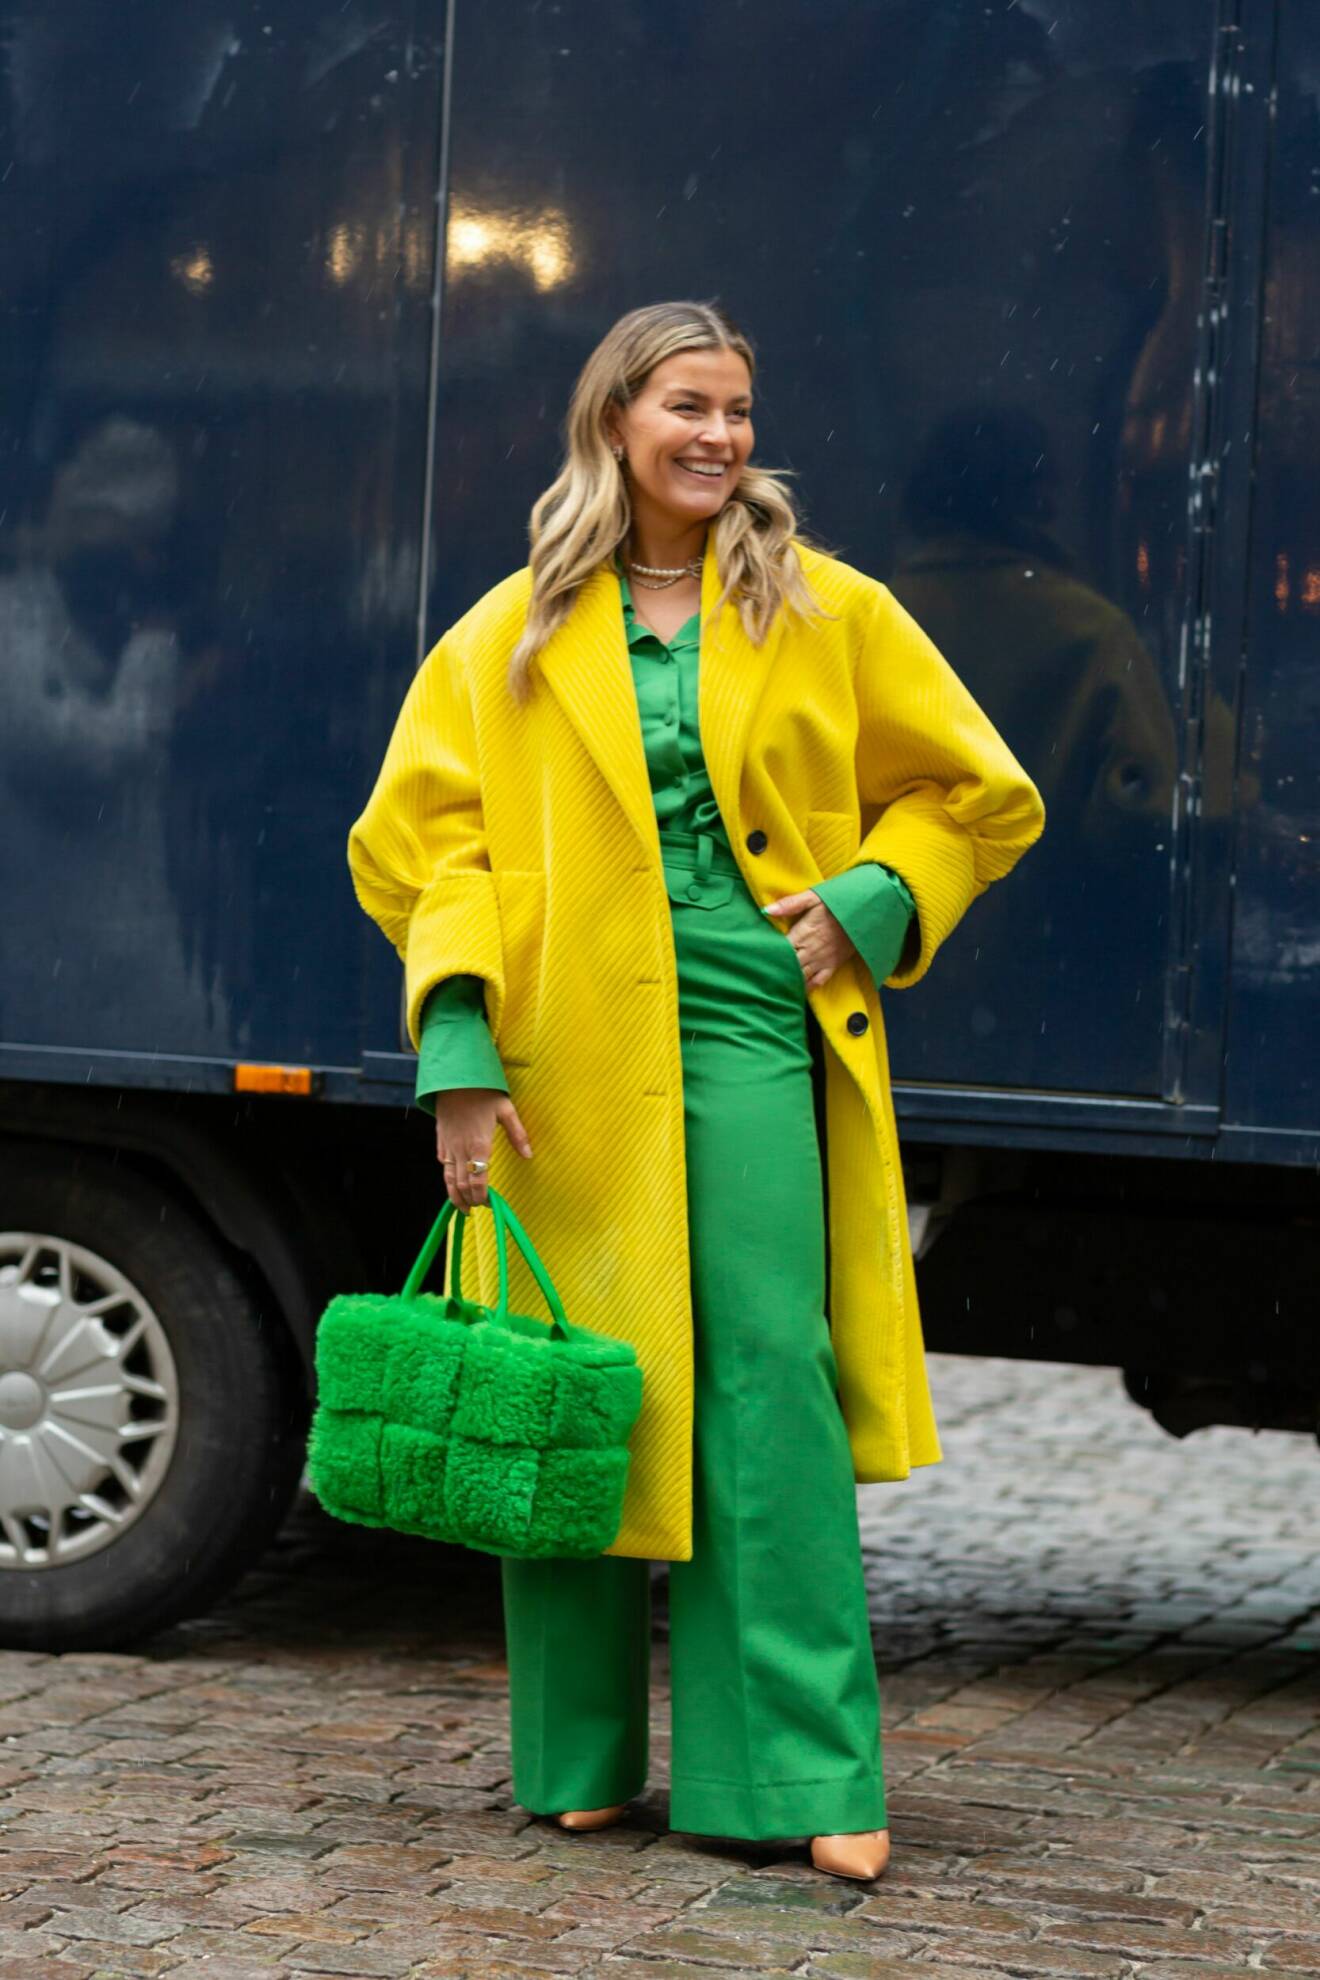 Janka Polliani i färgstark outfit i grönt och gult.